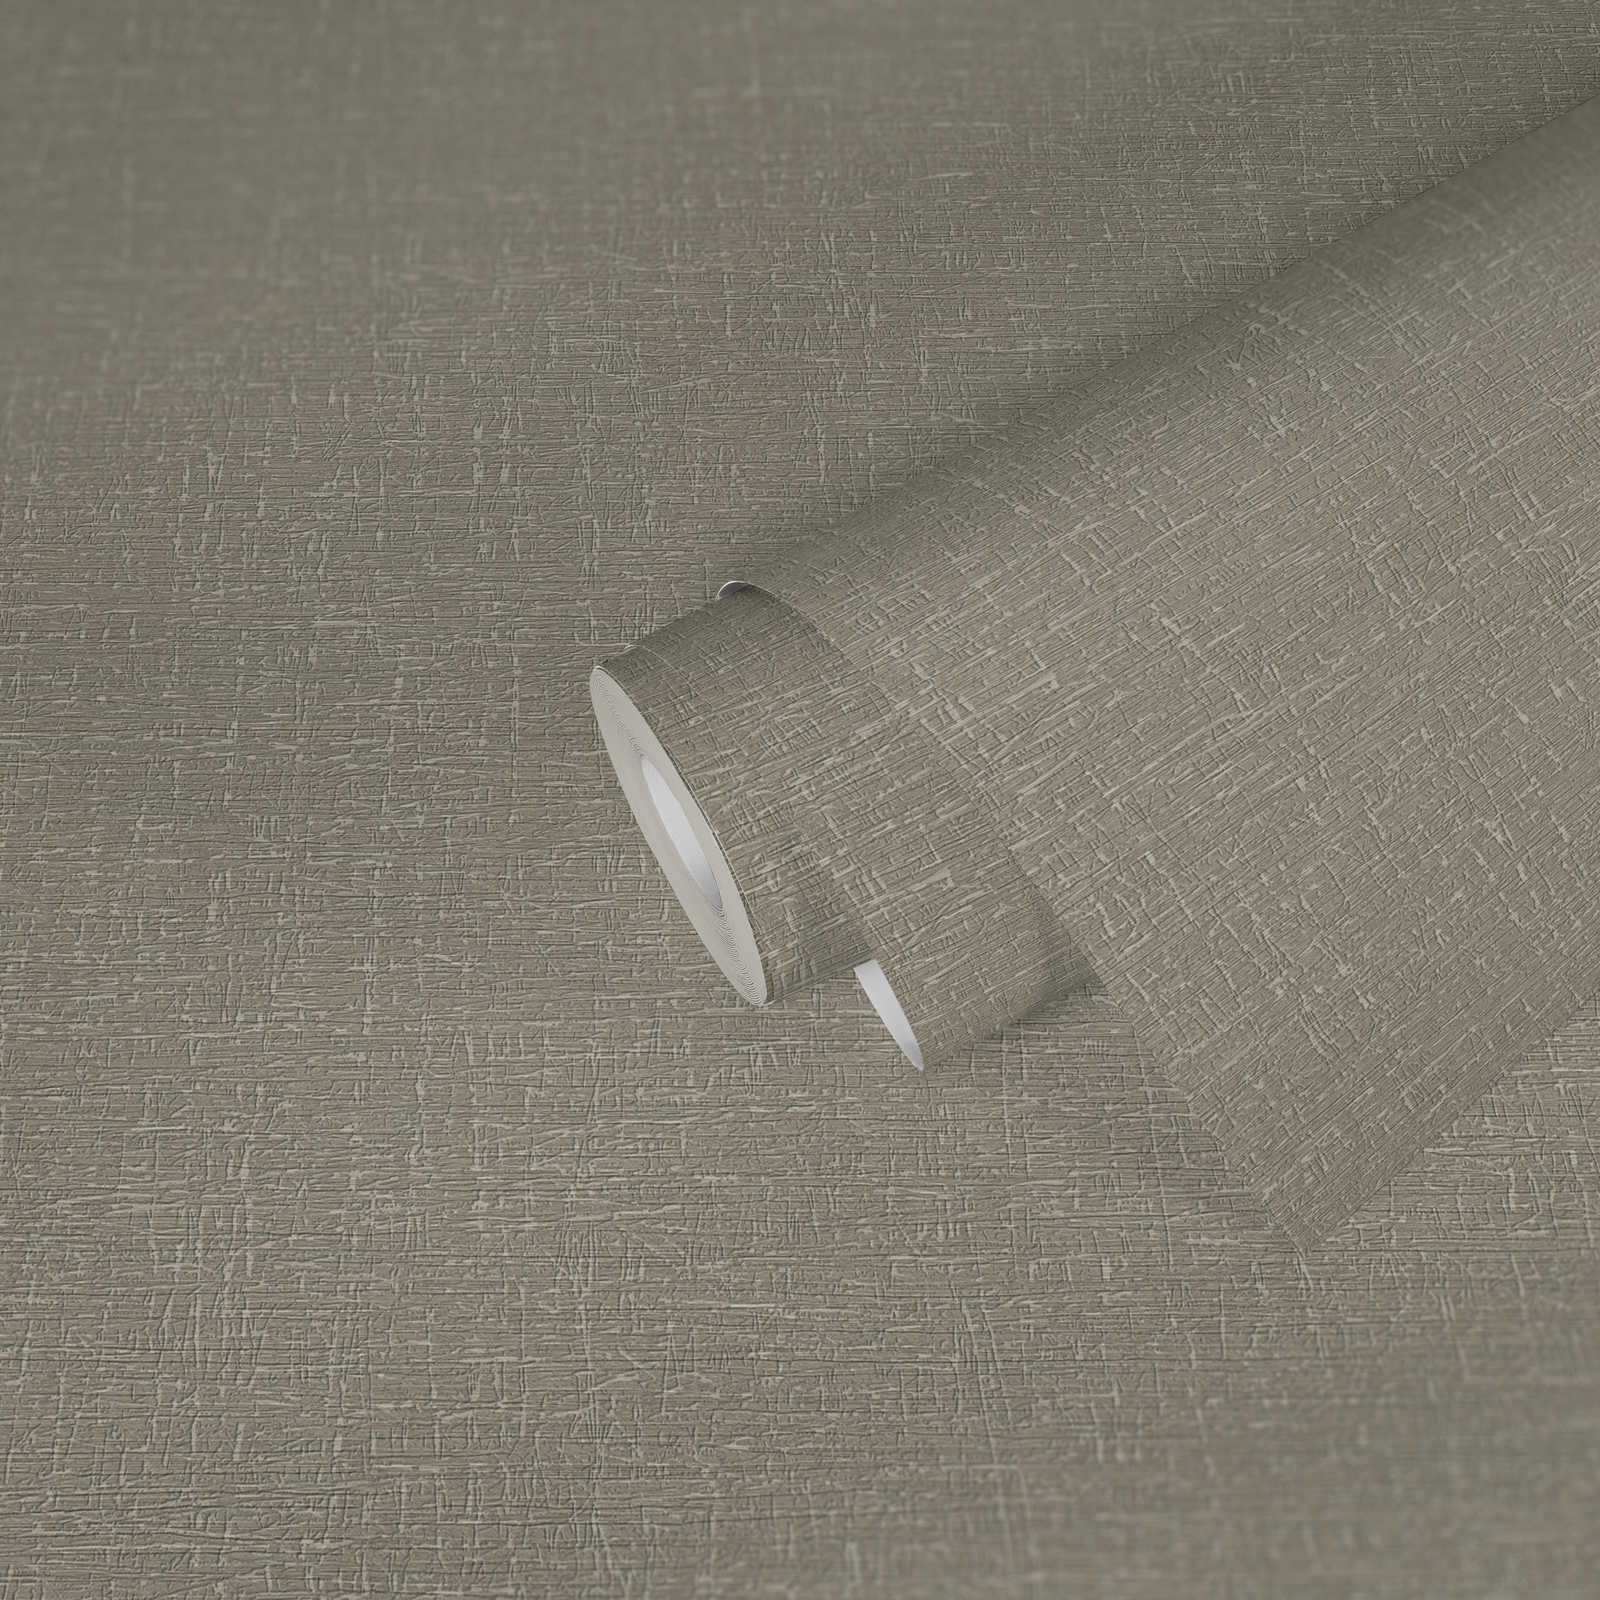             papier peint en papier uni structuré aspect mat - gris, marron
        